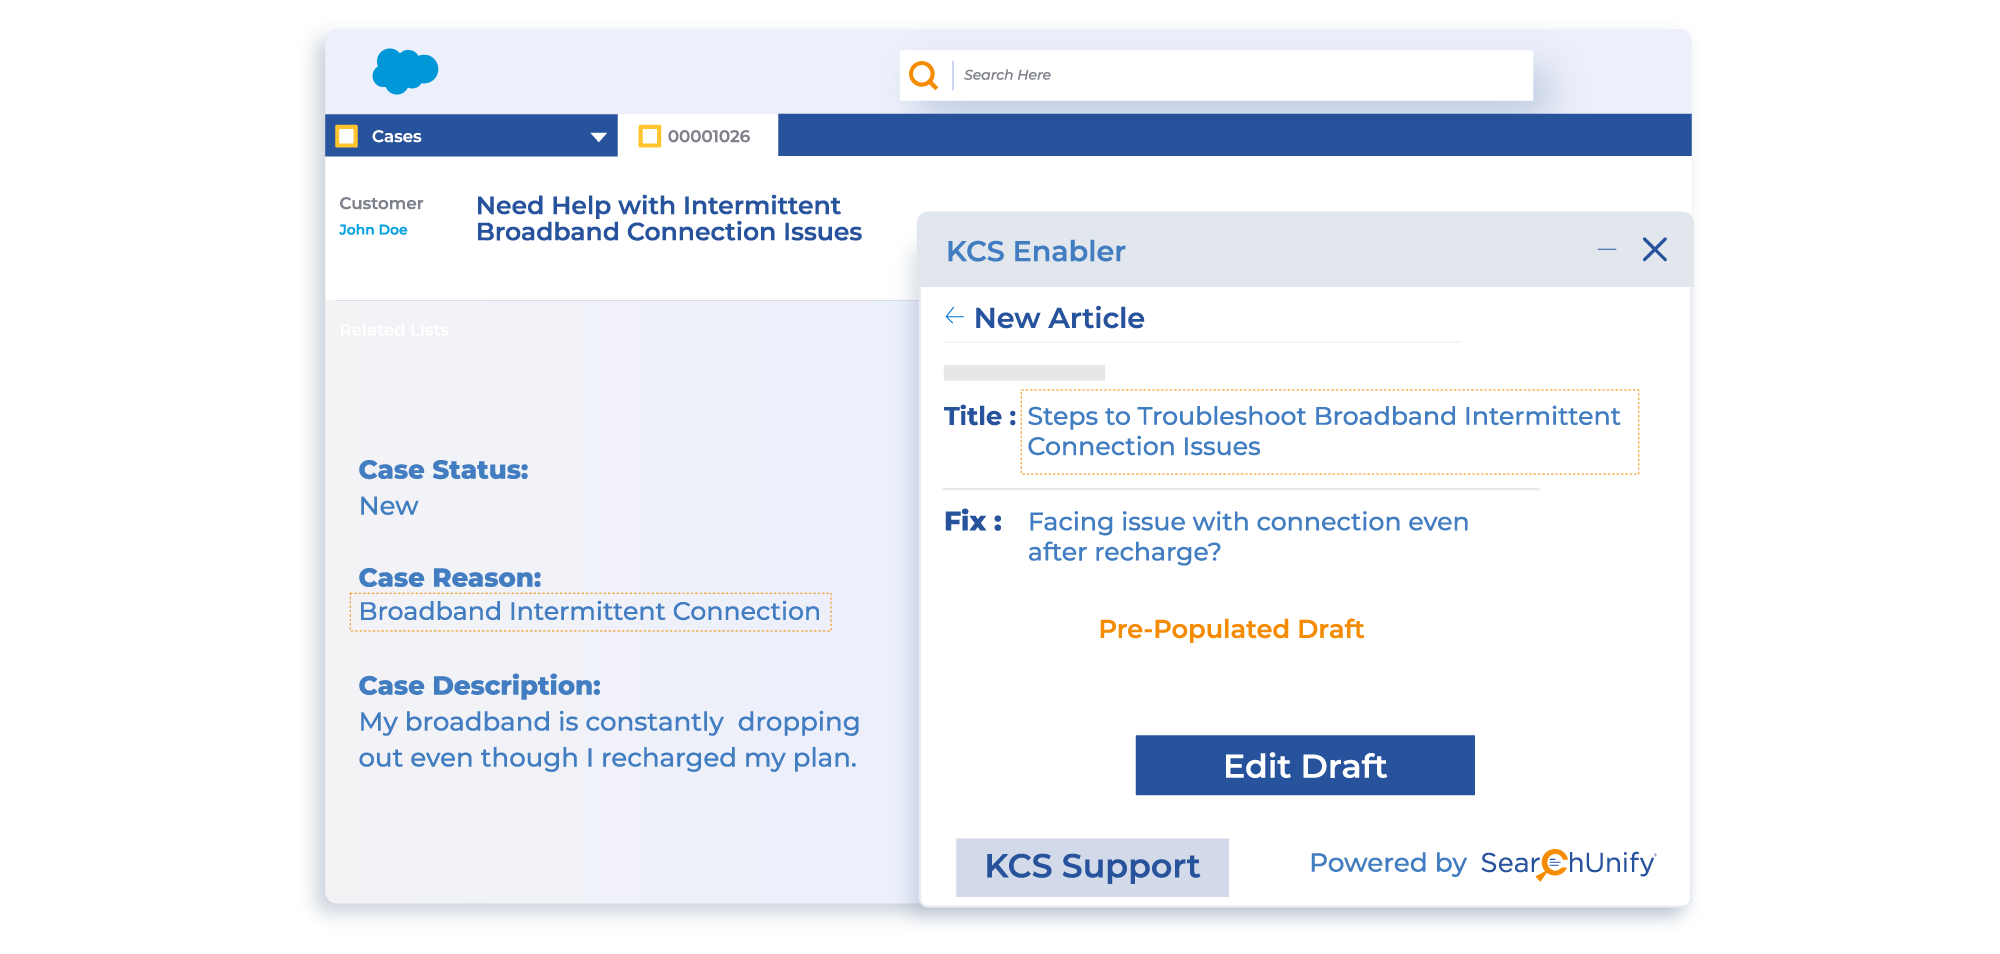 Drives KCS Adoption & Multimedia Support with KCS Enabler